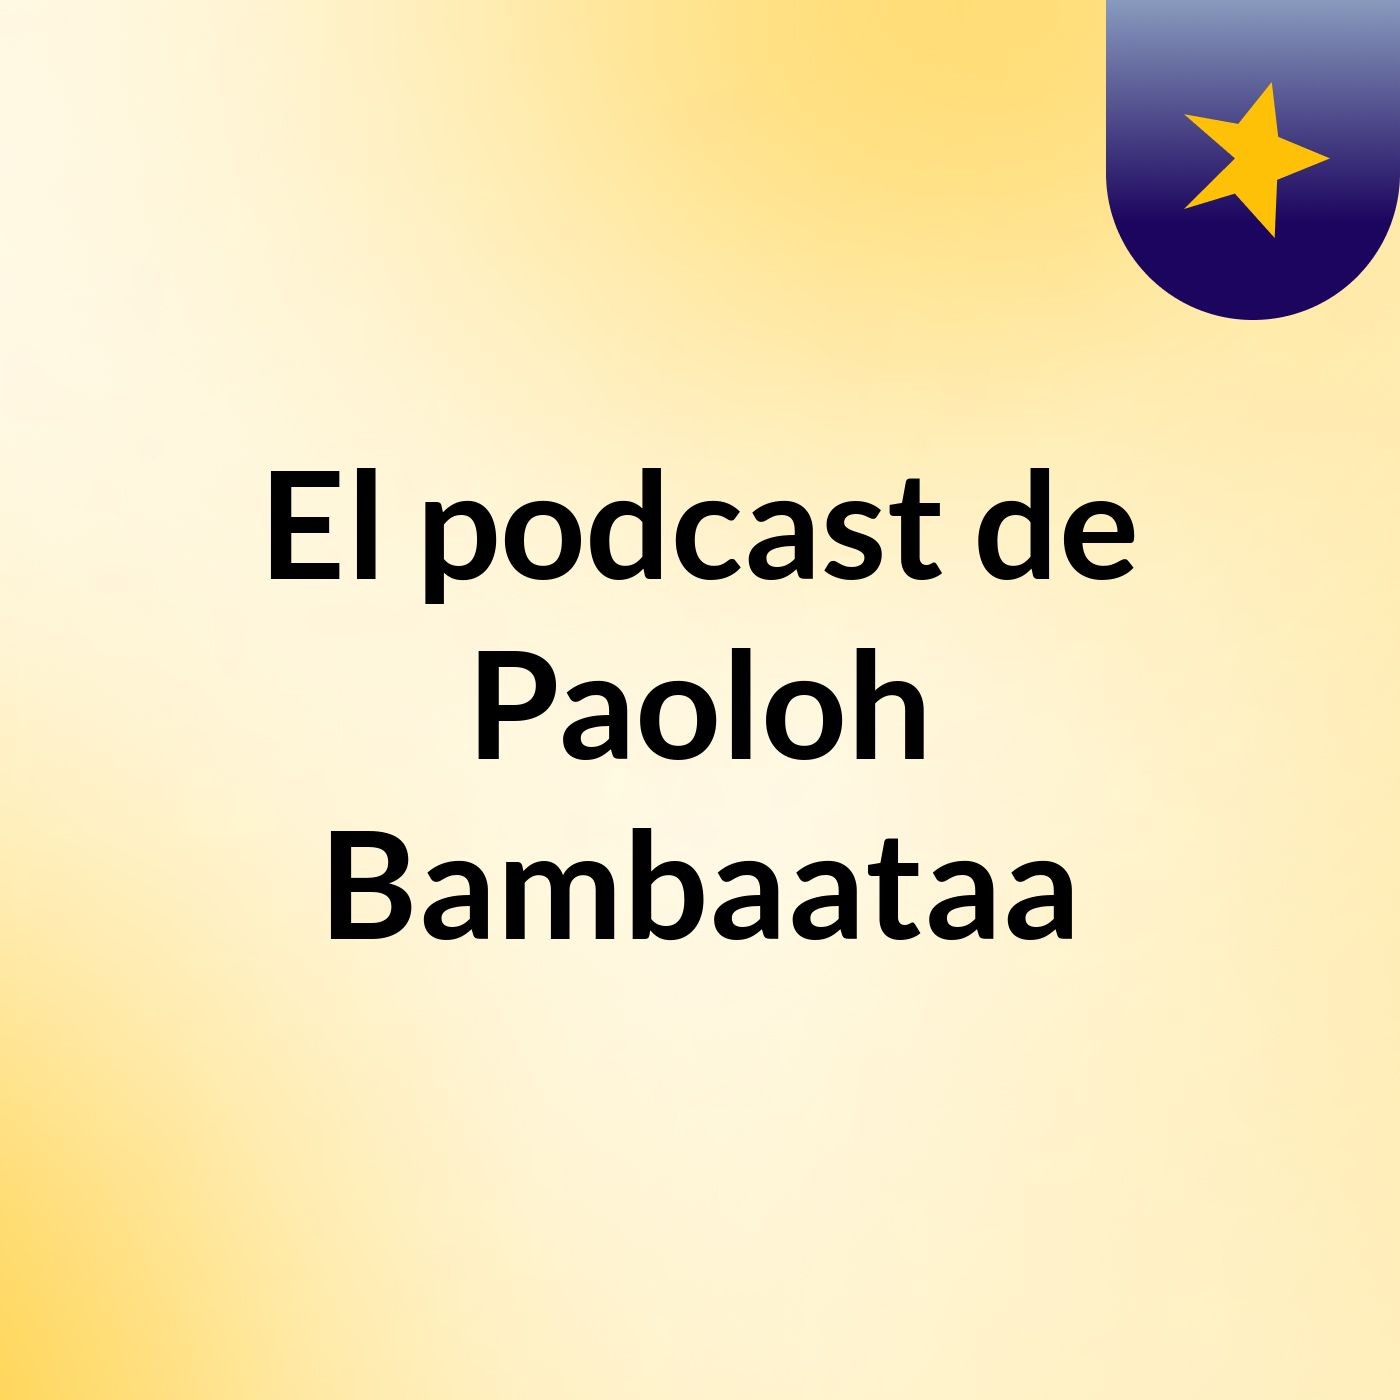 El podcast de Paoloh Bambaataa